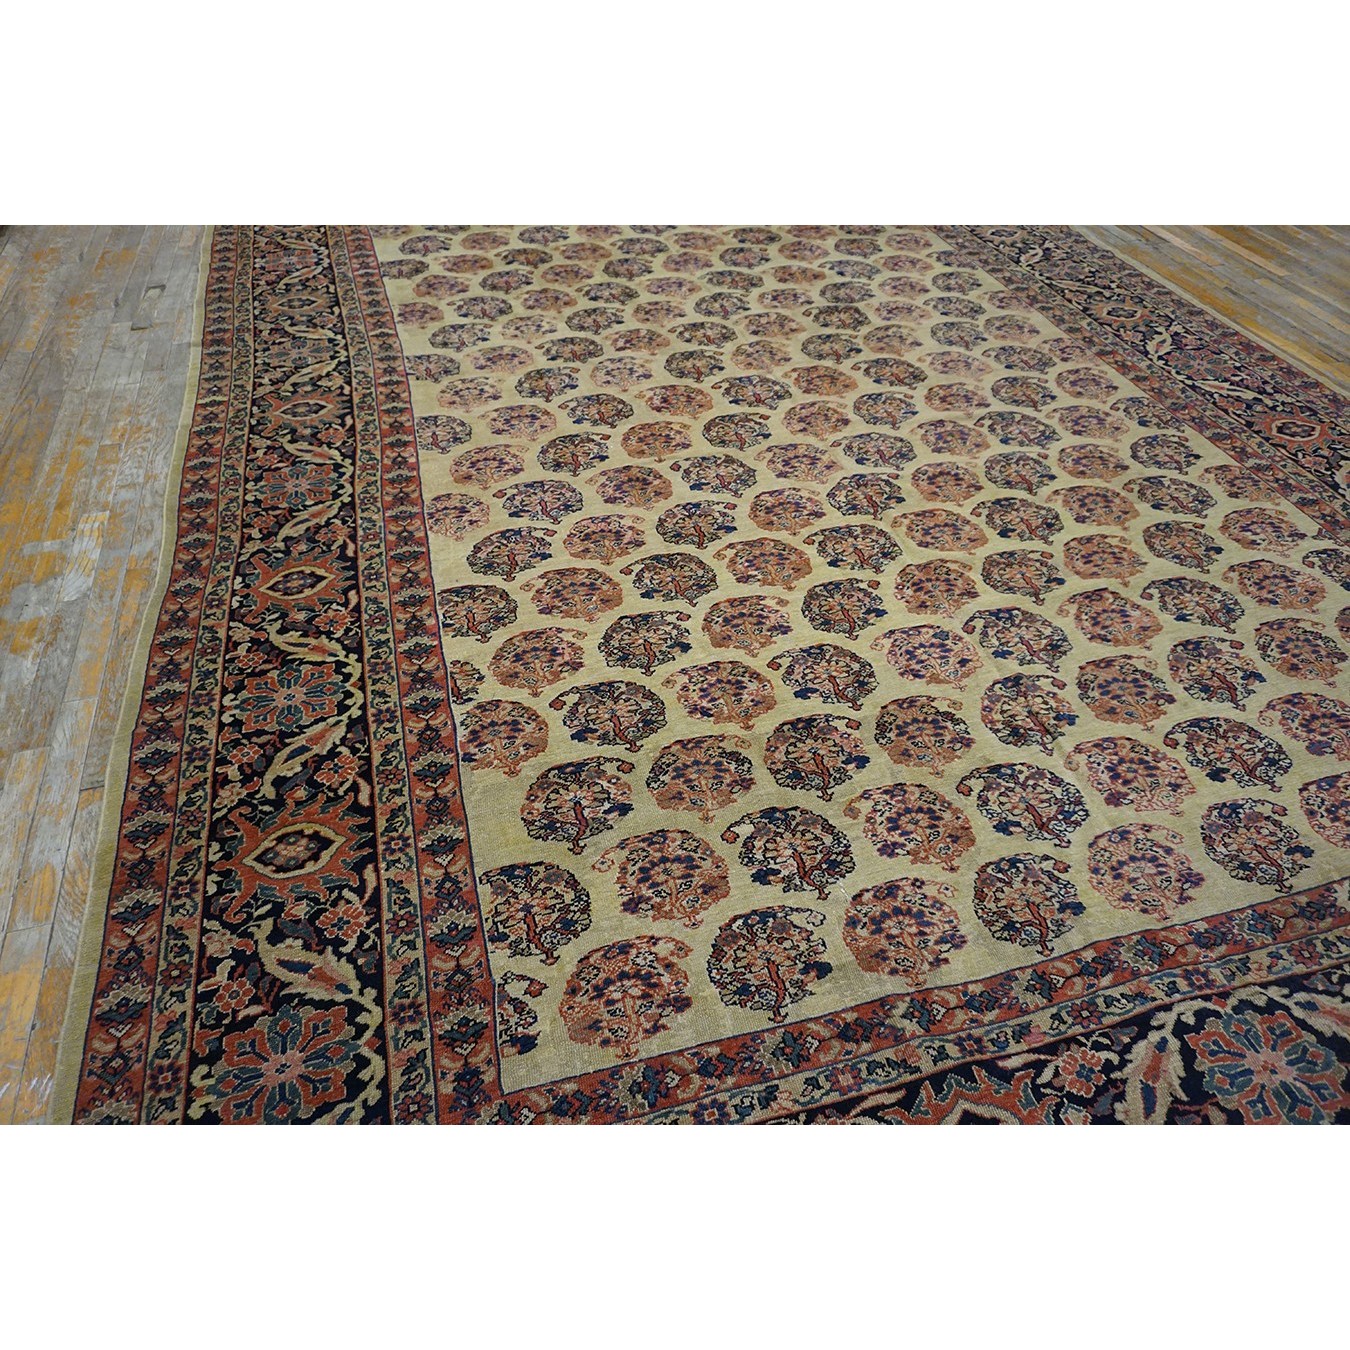 19th Century Persian Malayer Carpet - Antique Rug Studio